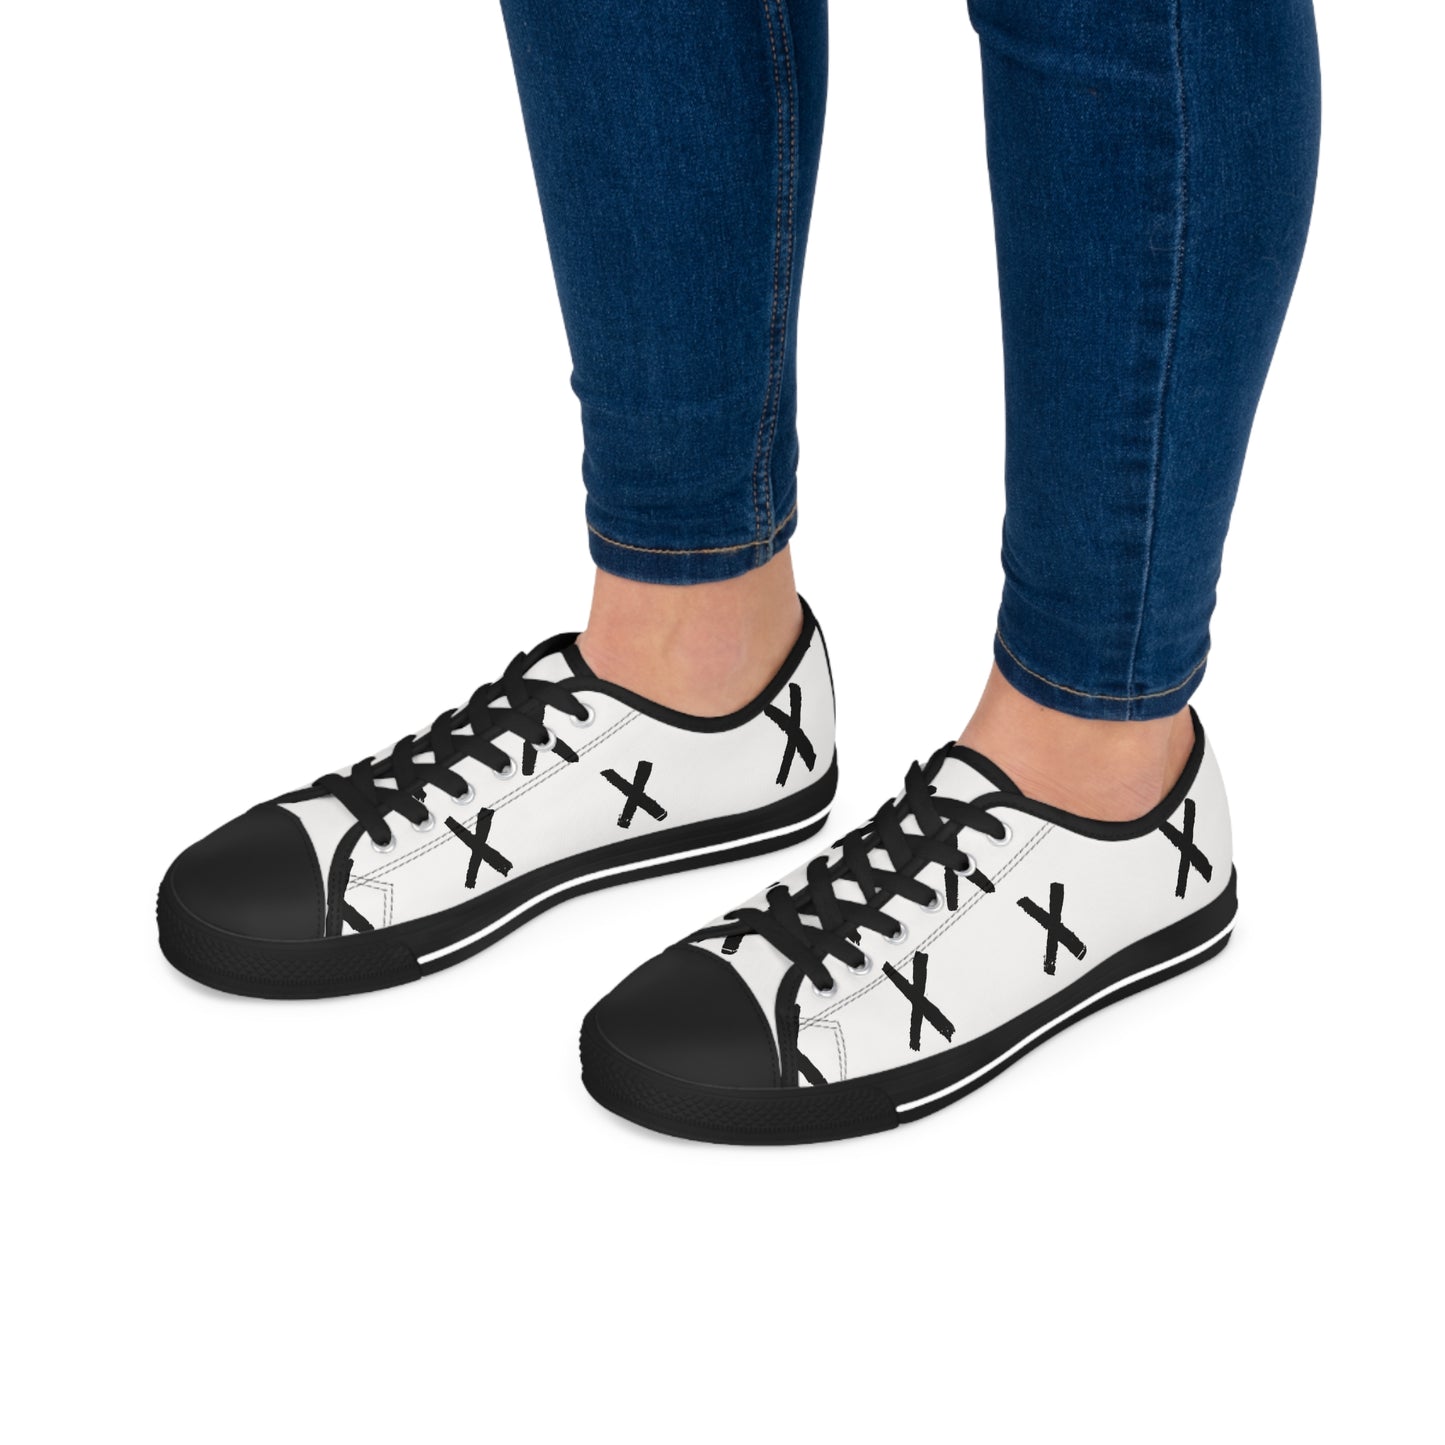 Cion EllaMay - Women's Low-Top Sneakers